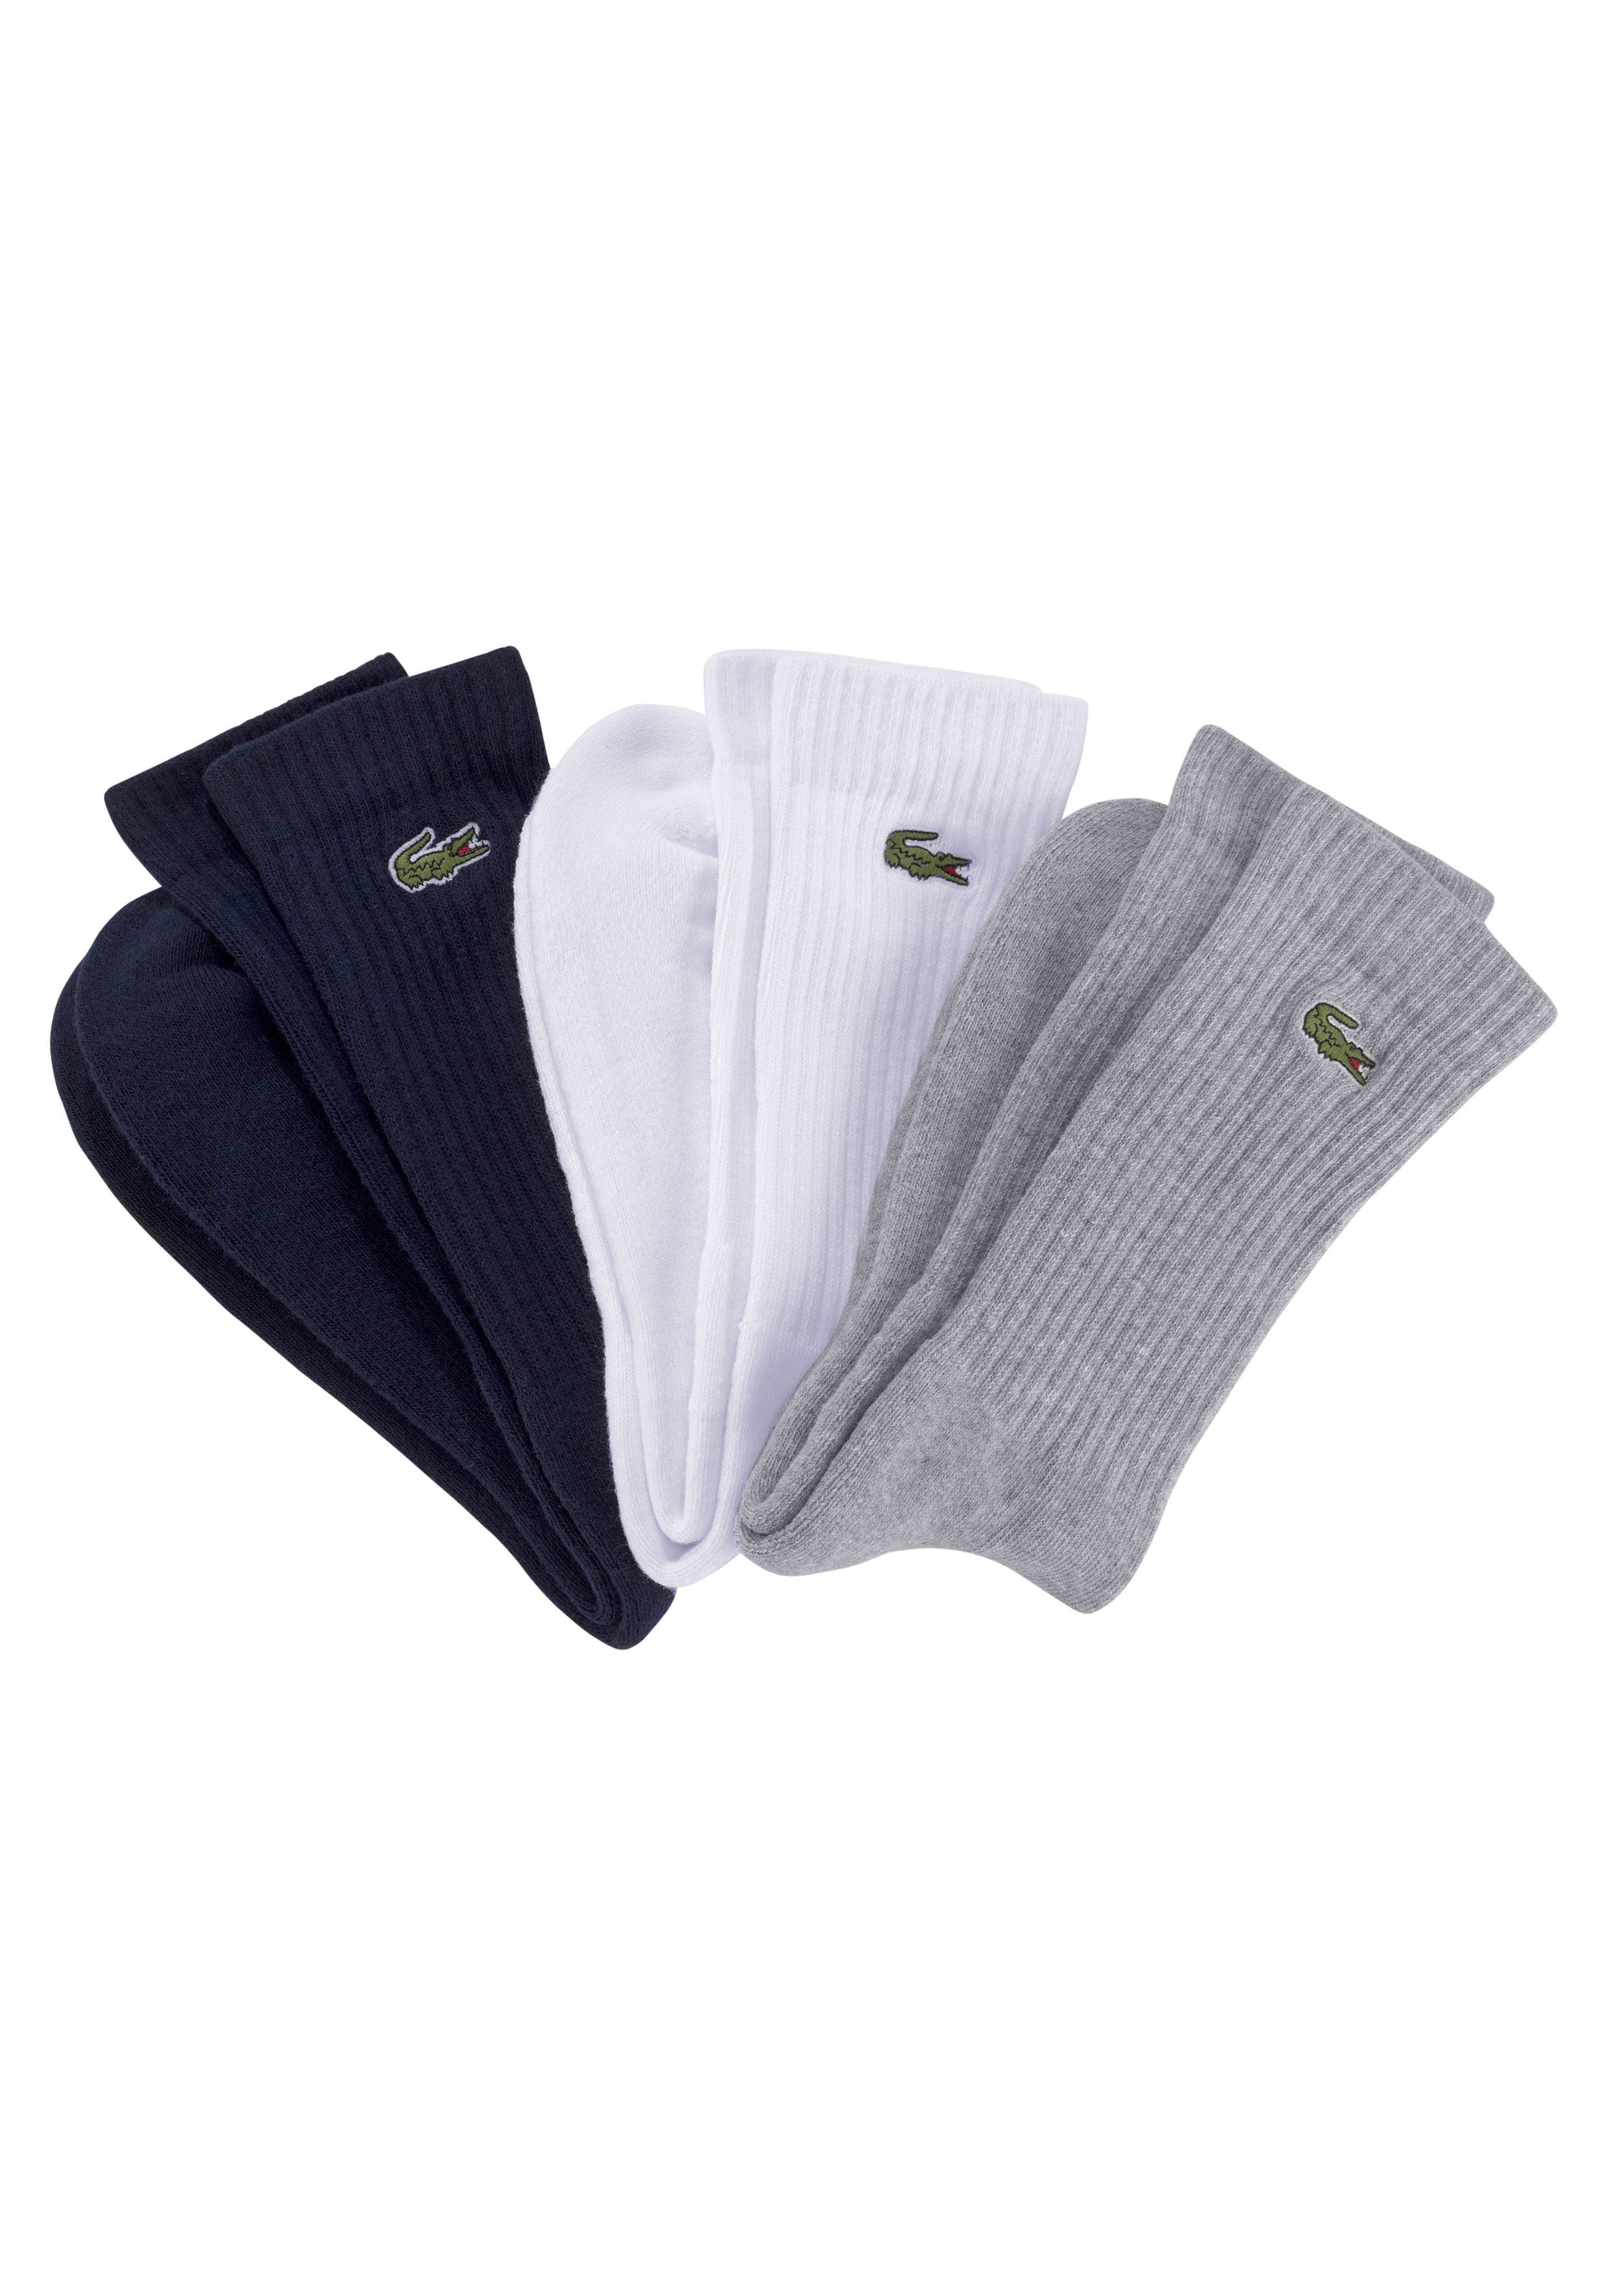 Lacoste schwarz weiß hoher Komfort Tennissocken grau Langlebigkeit Baumwollmix, (3-Paar) hochwertiger und